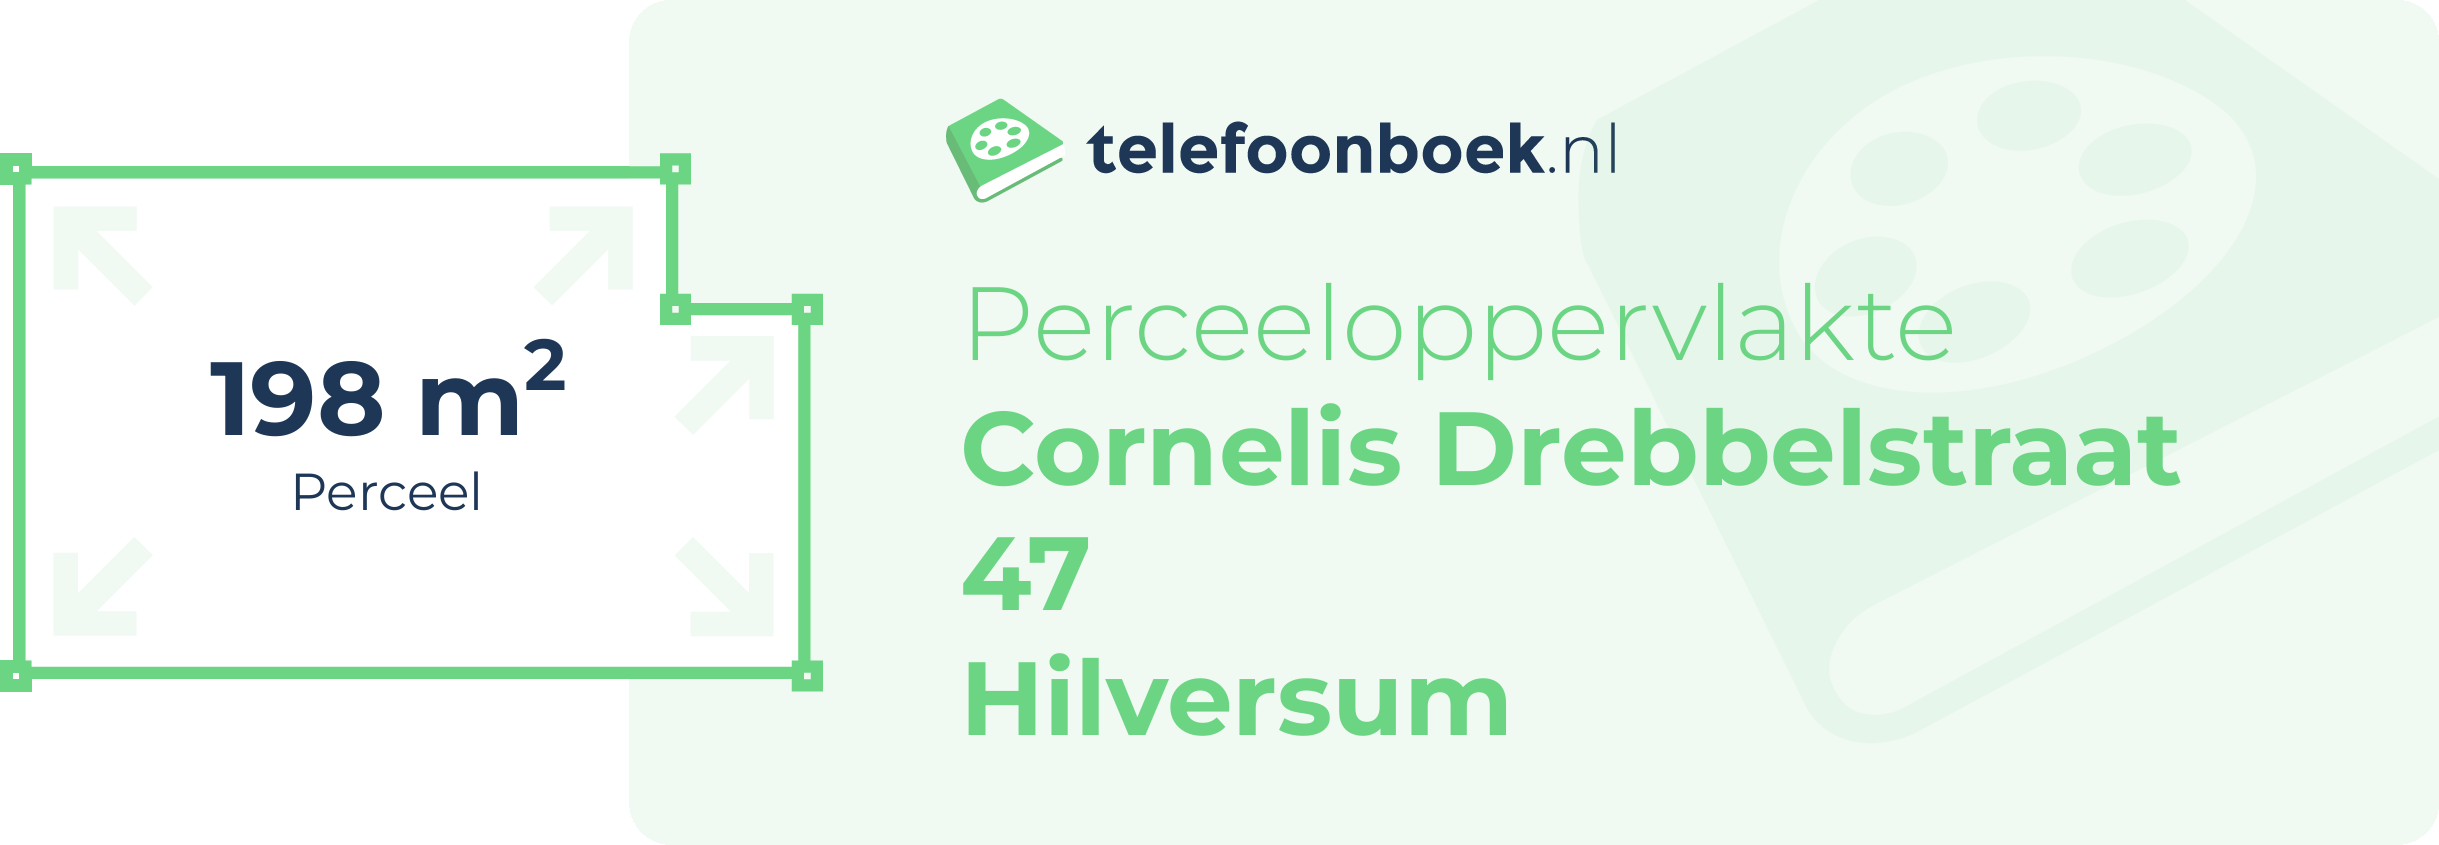 Perceeloppervlakte Cornelis Drebbelstraat 47 Hilversum